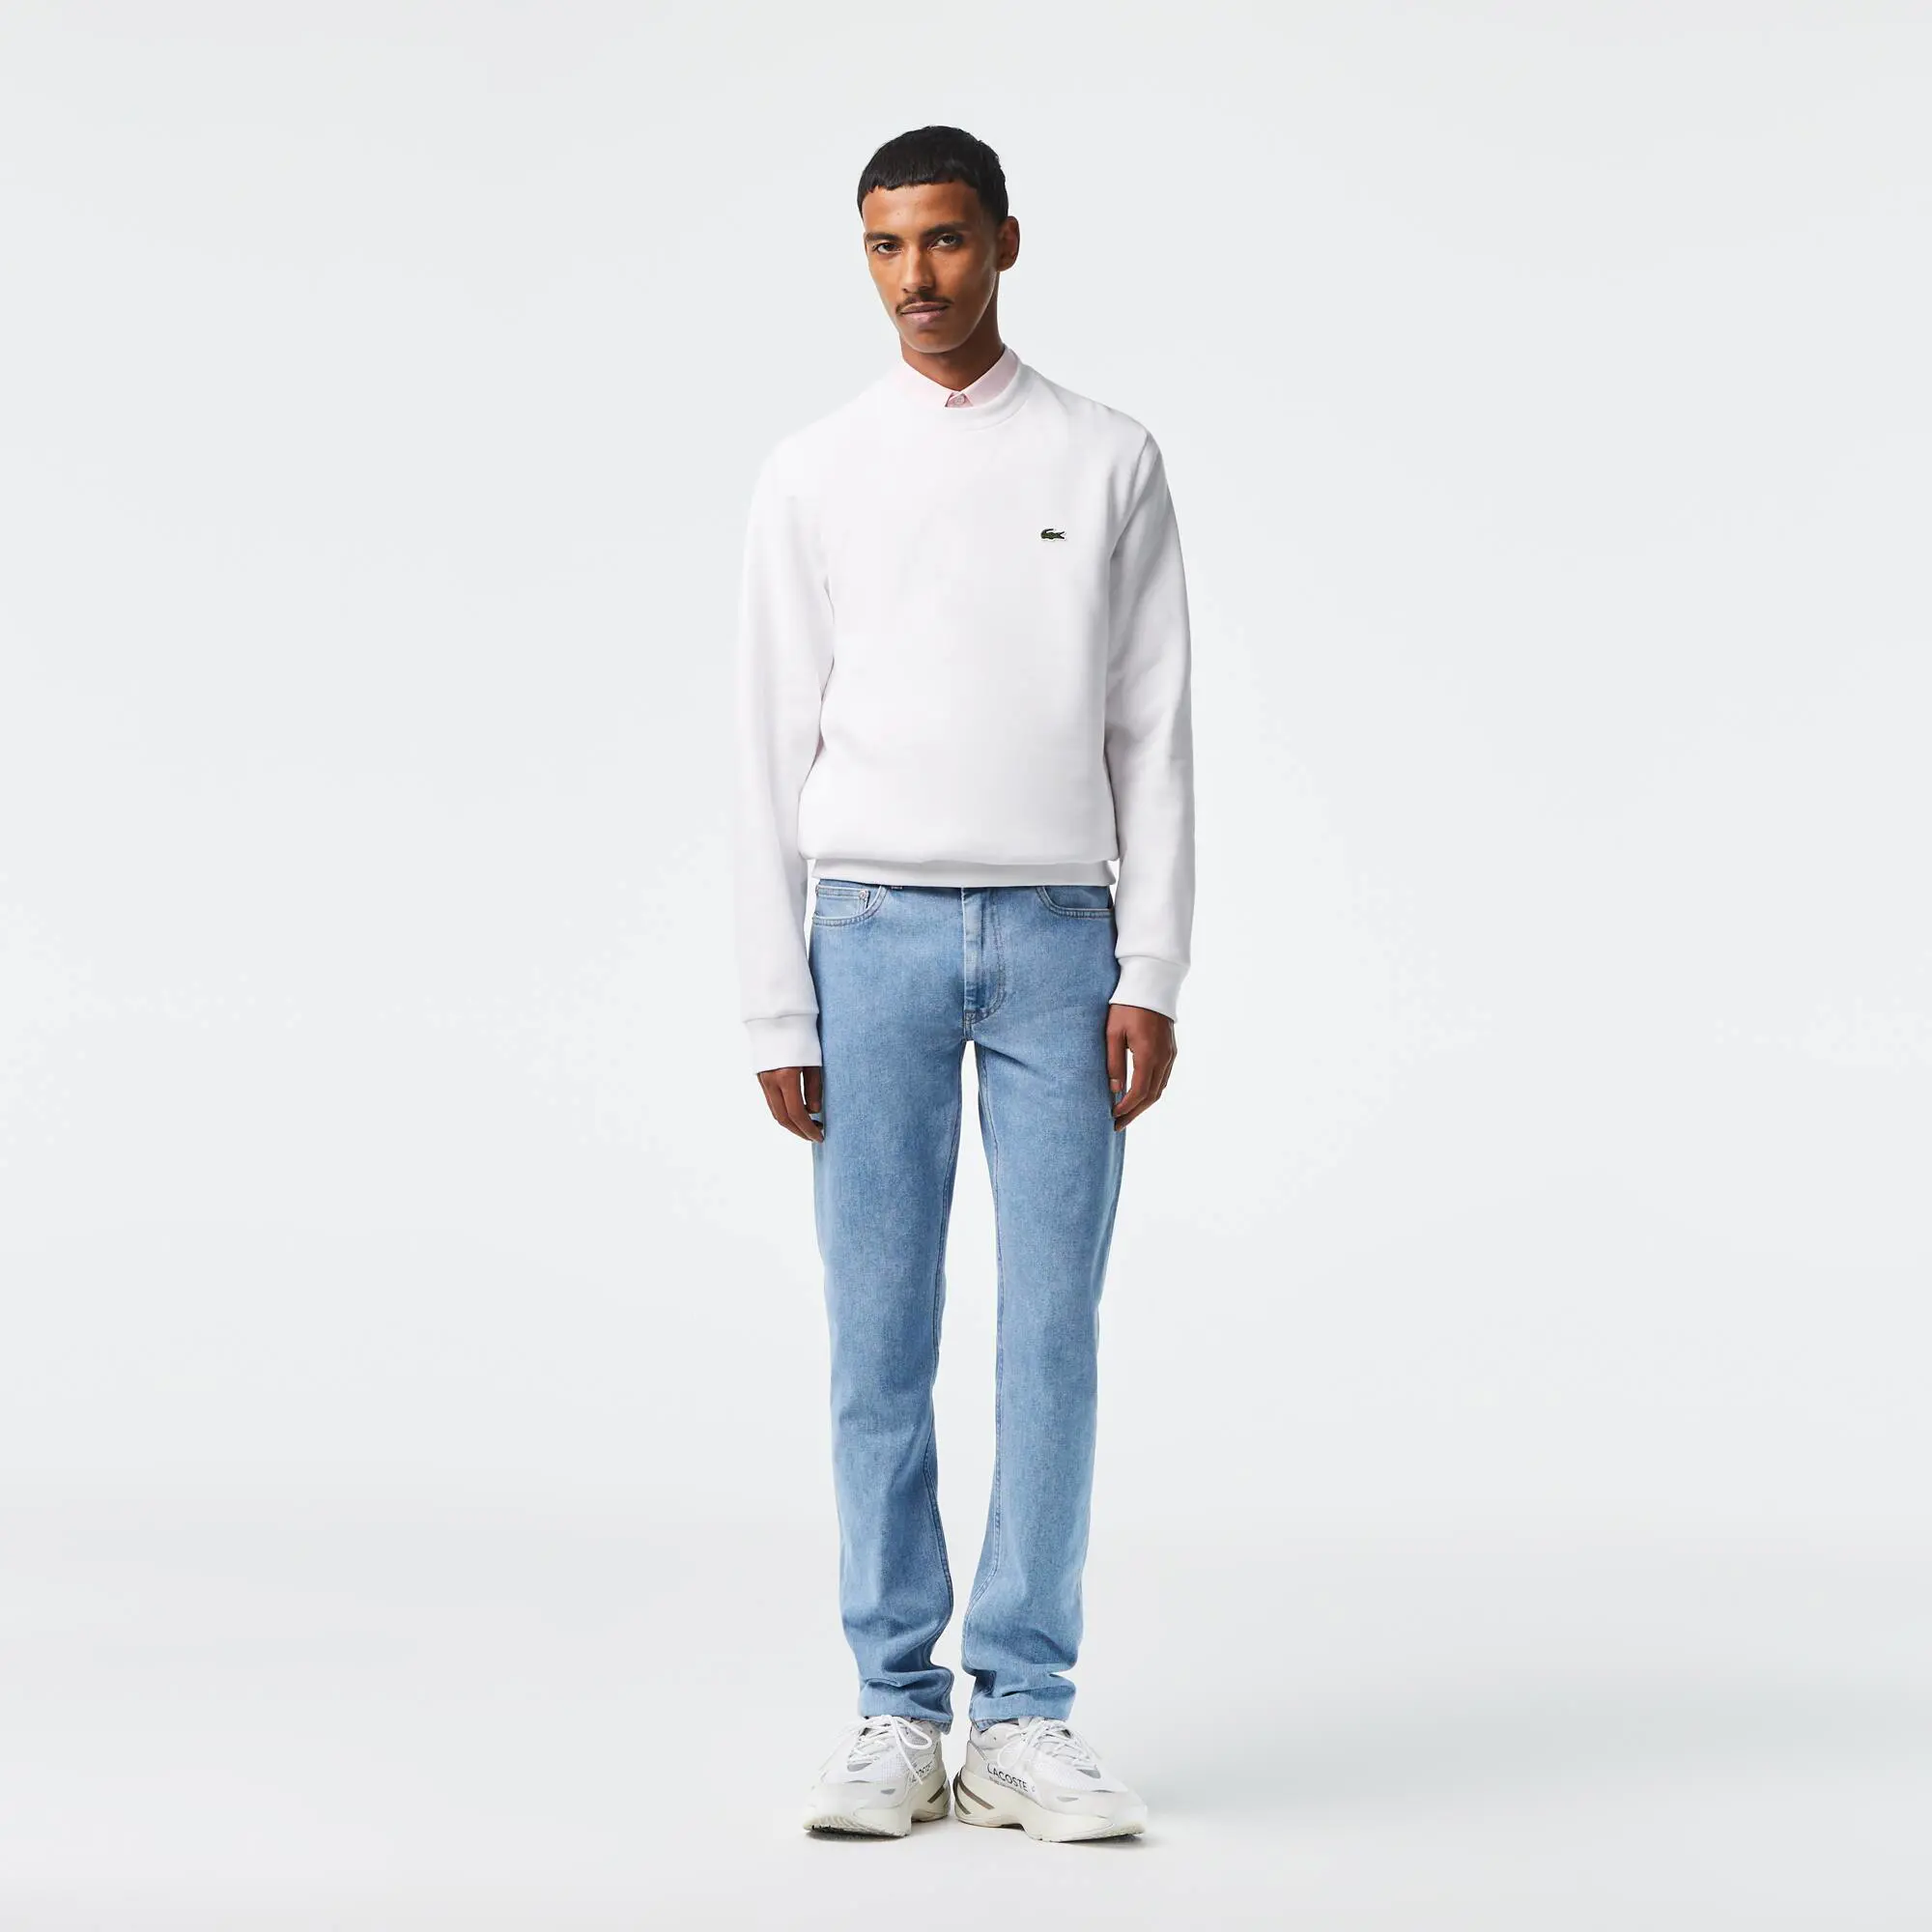 Lacoste Men's Slim Fit Stretch Cotton Denim Jeans. 1